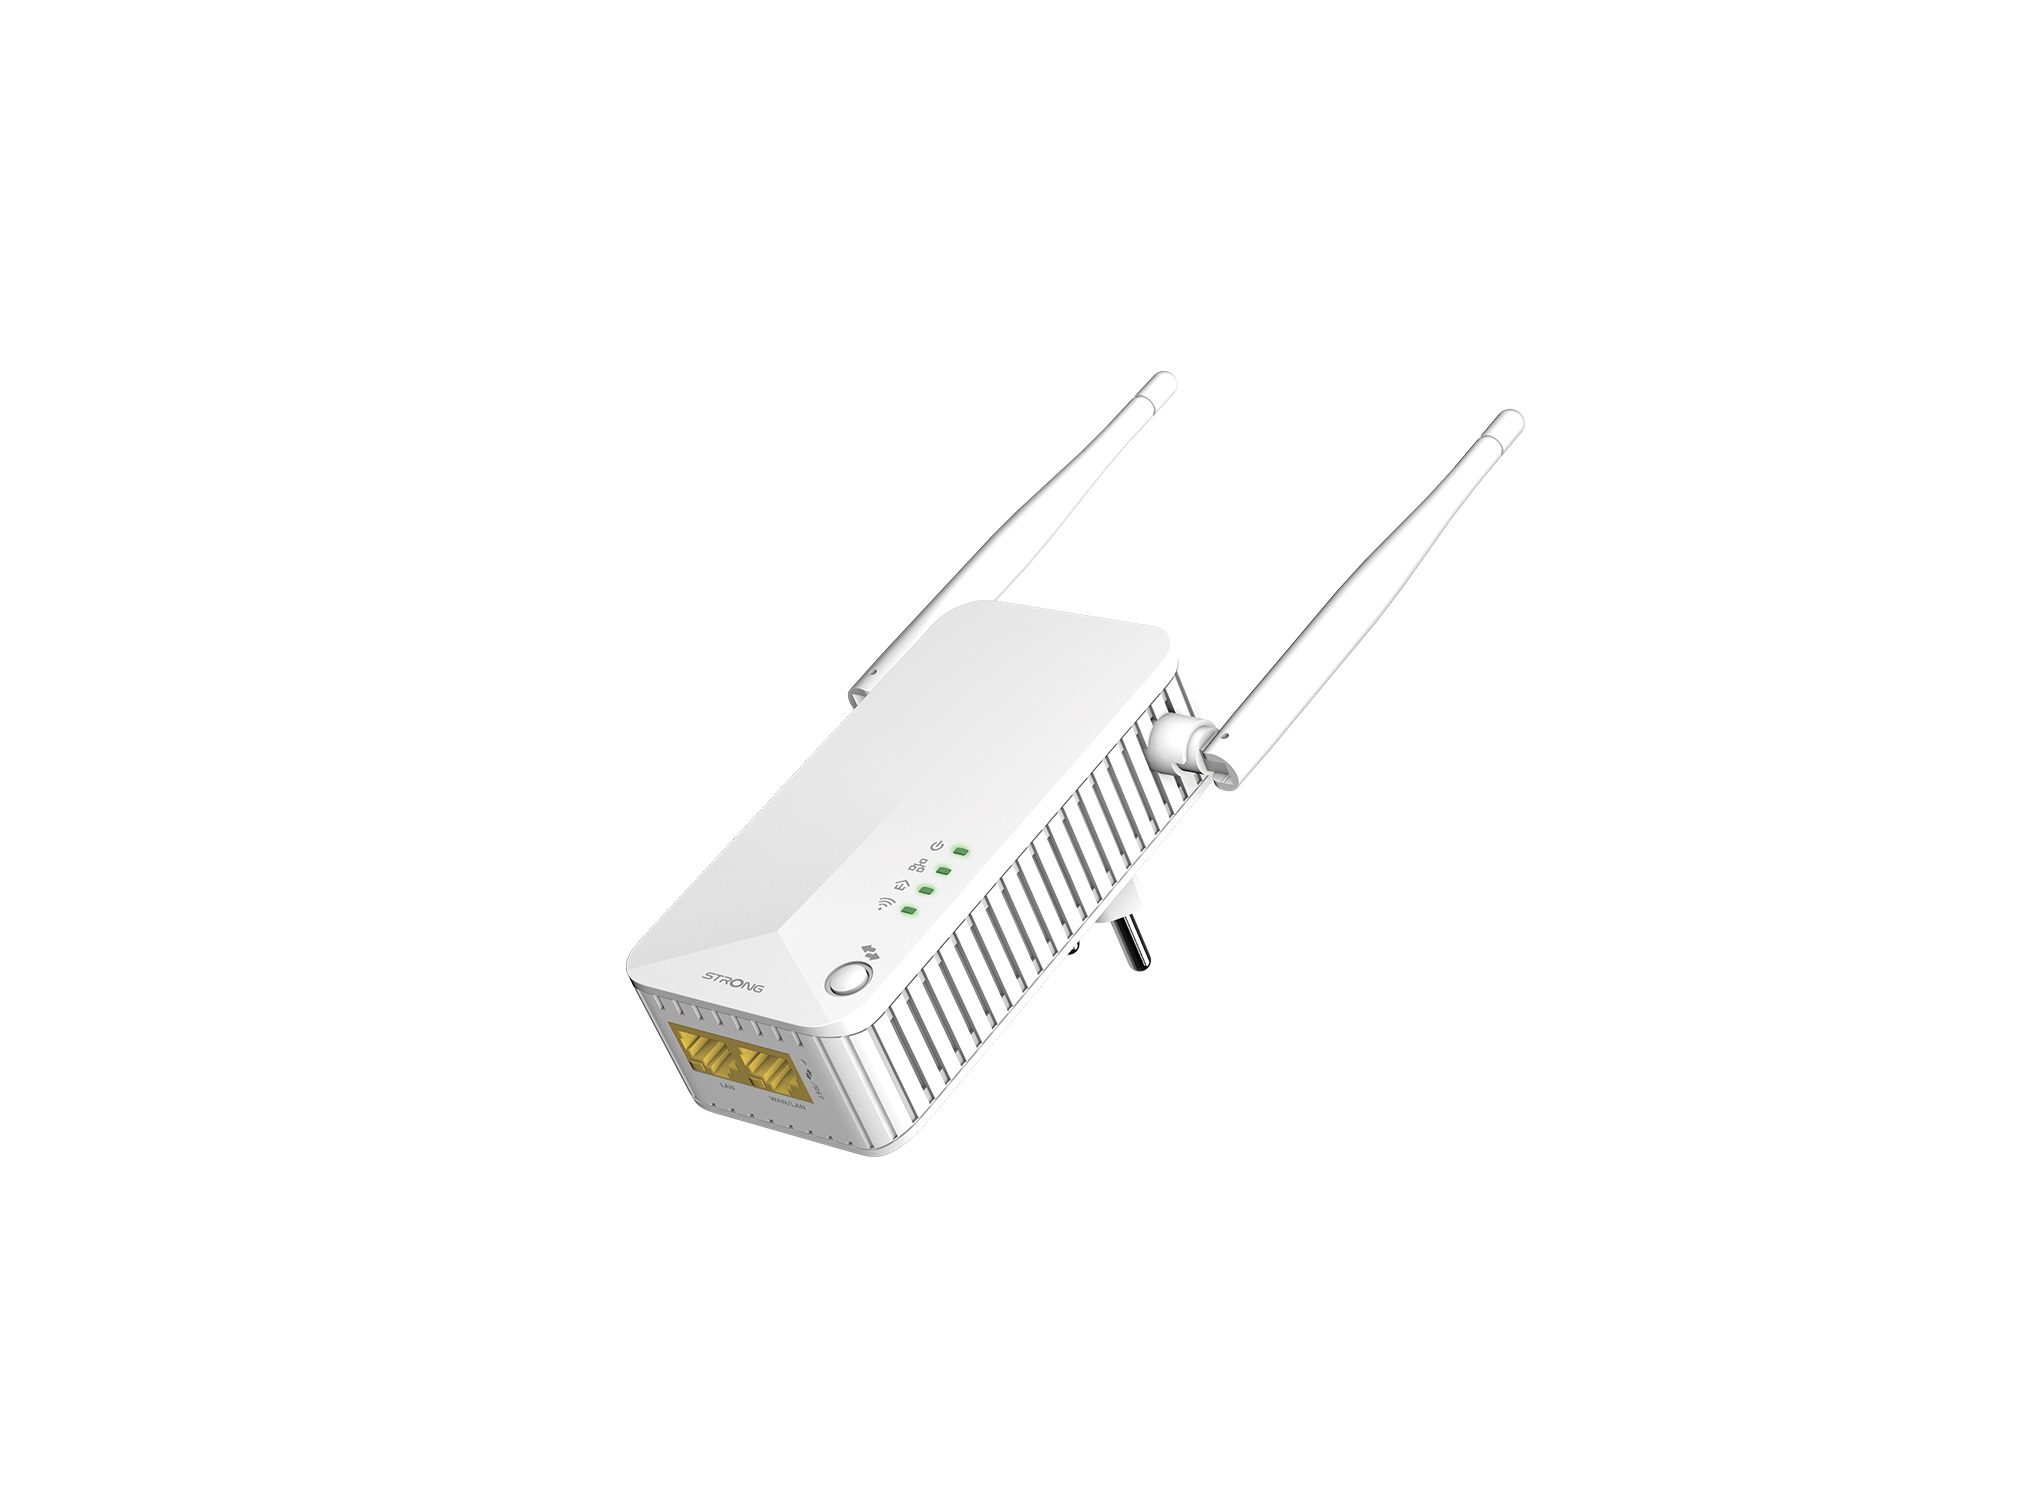 STRONG Powerline WLAN EU LAN kabelgebunden, Duo Set Powerline 600 kabellos 600 Mbit/s